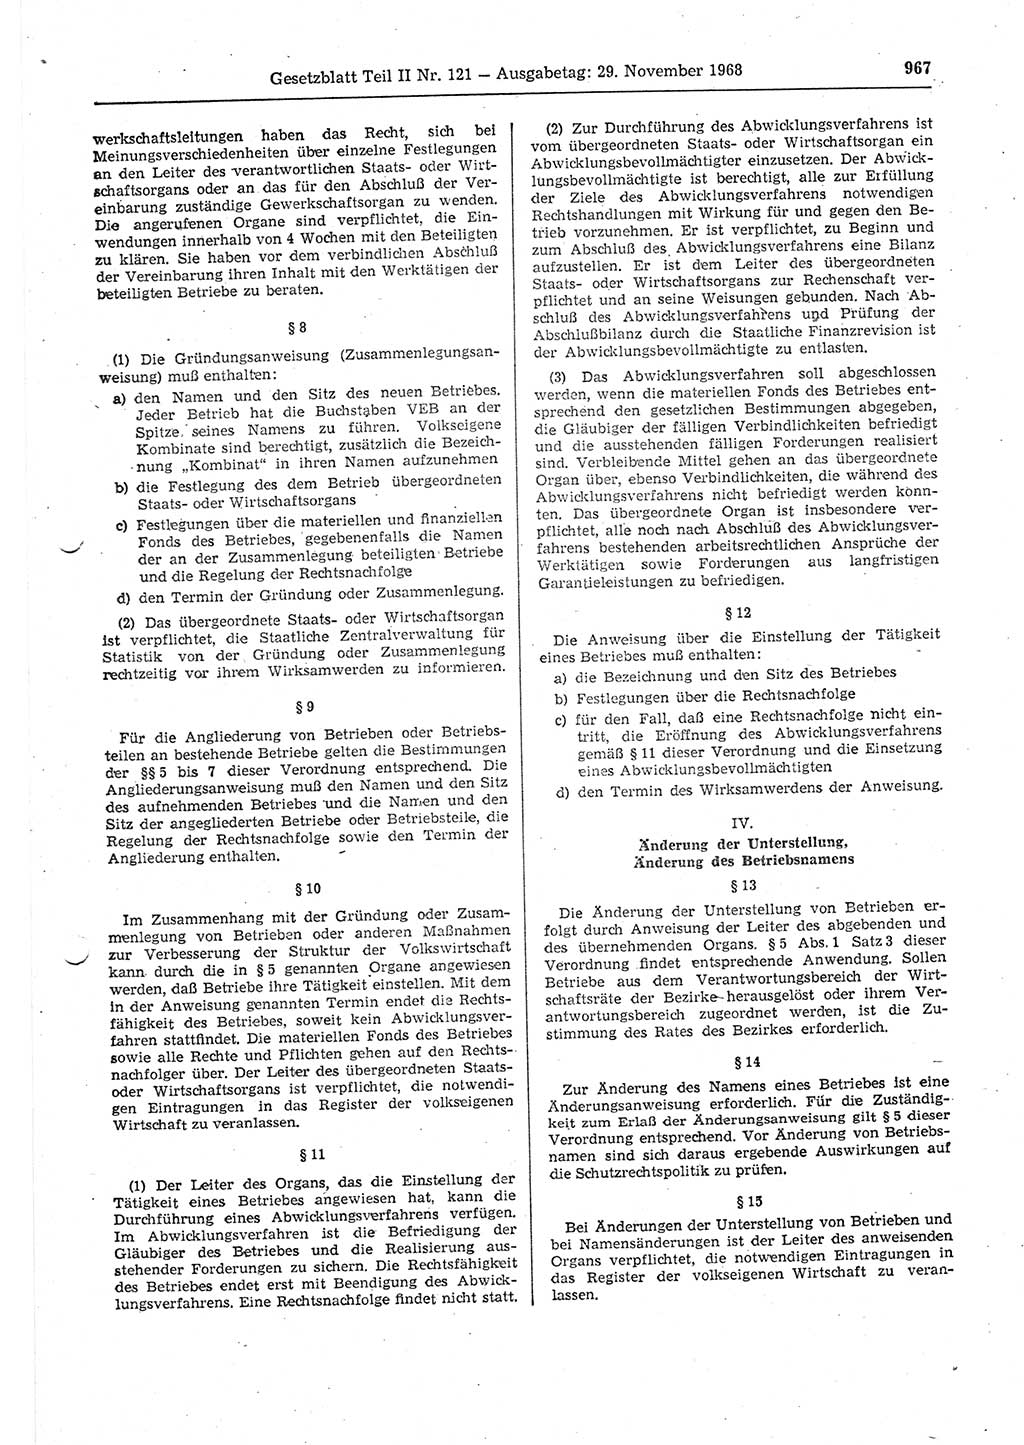 Gesetzblatt (GBl.) der Deutschen Demokratischen Republik (DDR) Teil ⅠⅠ 1968, Seite 967 (GBl. DDR ⅠⅠ 1968, S. 967)